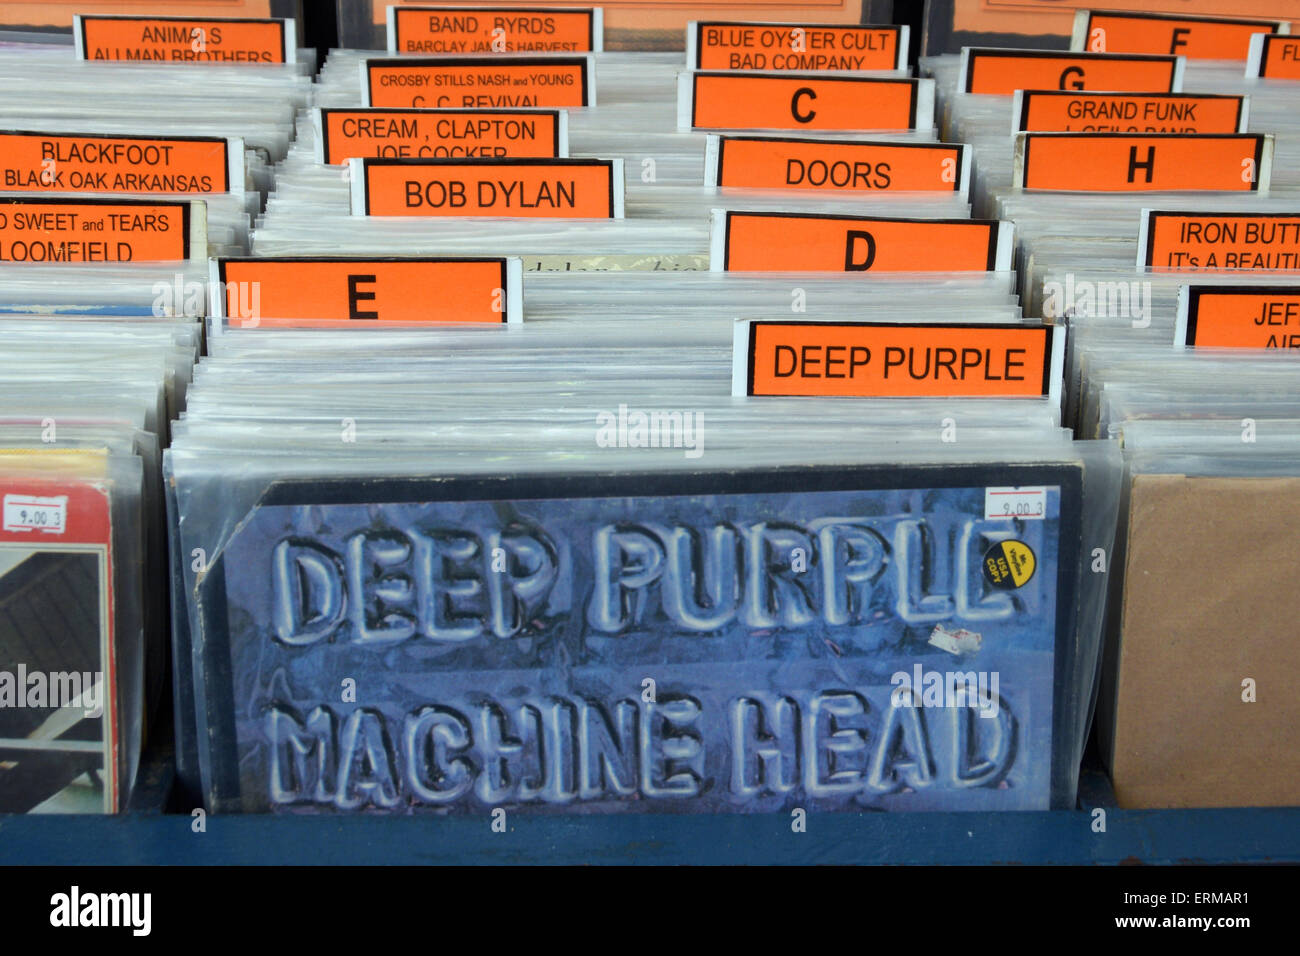 Vintage rock musica dischi in vinile in vendita archiviati in ordine alfabetico e manicotto di album per la testa della macchina di Deep Purple. Foto Stock